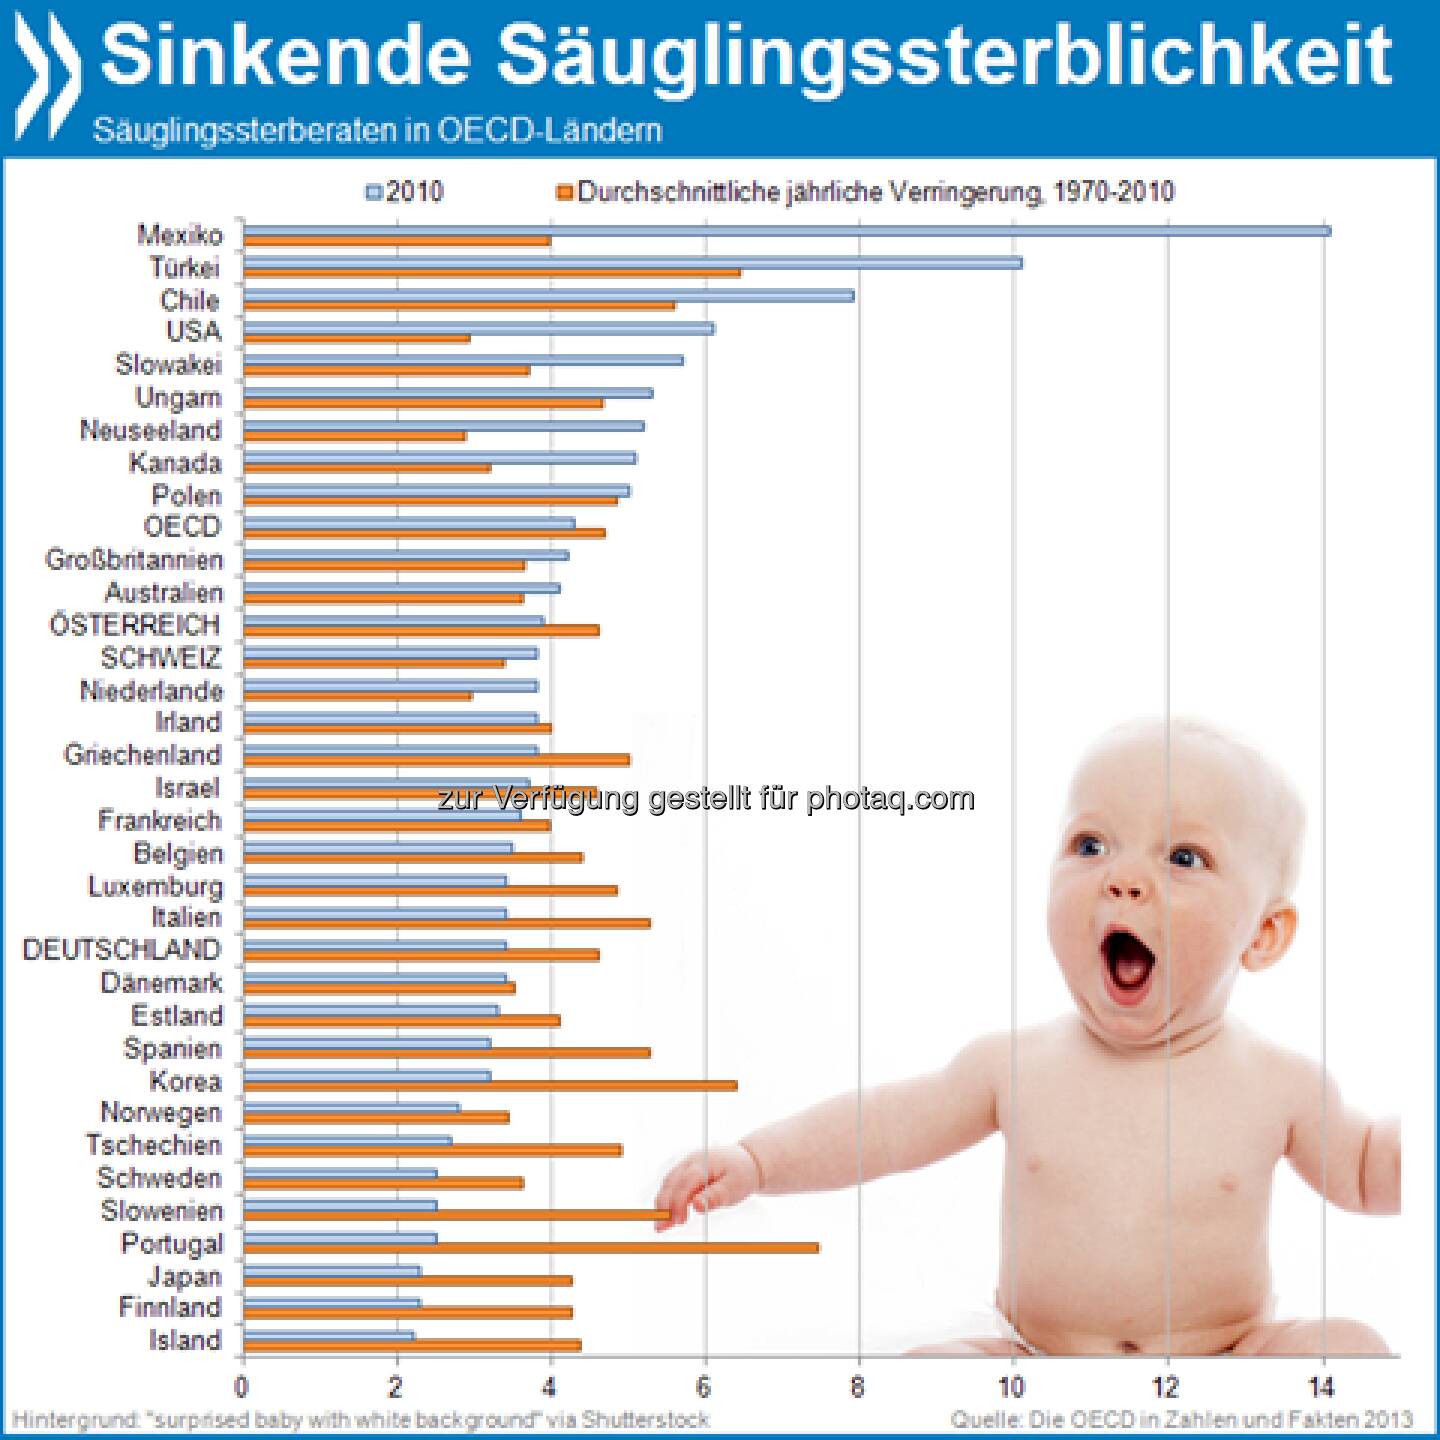 Zeit zu Leben: Die Säuglingssterblichkeit in der OECD ist seit 1970 um 85 Prozent gesunken. Die größten Fortschritte machte Portugal, wo zuvor europaweit die meisten Neugeborenen starben.

Mehr unter http://bit.ly/12vLE8r (Die OECD in Zahlen und Fakten 2013, S.235)